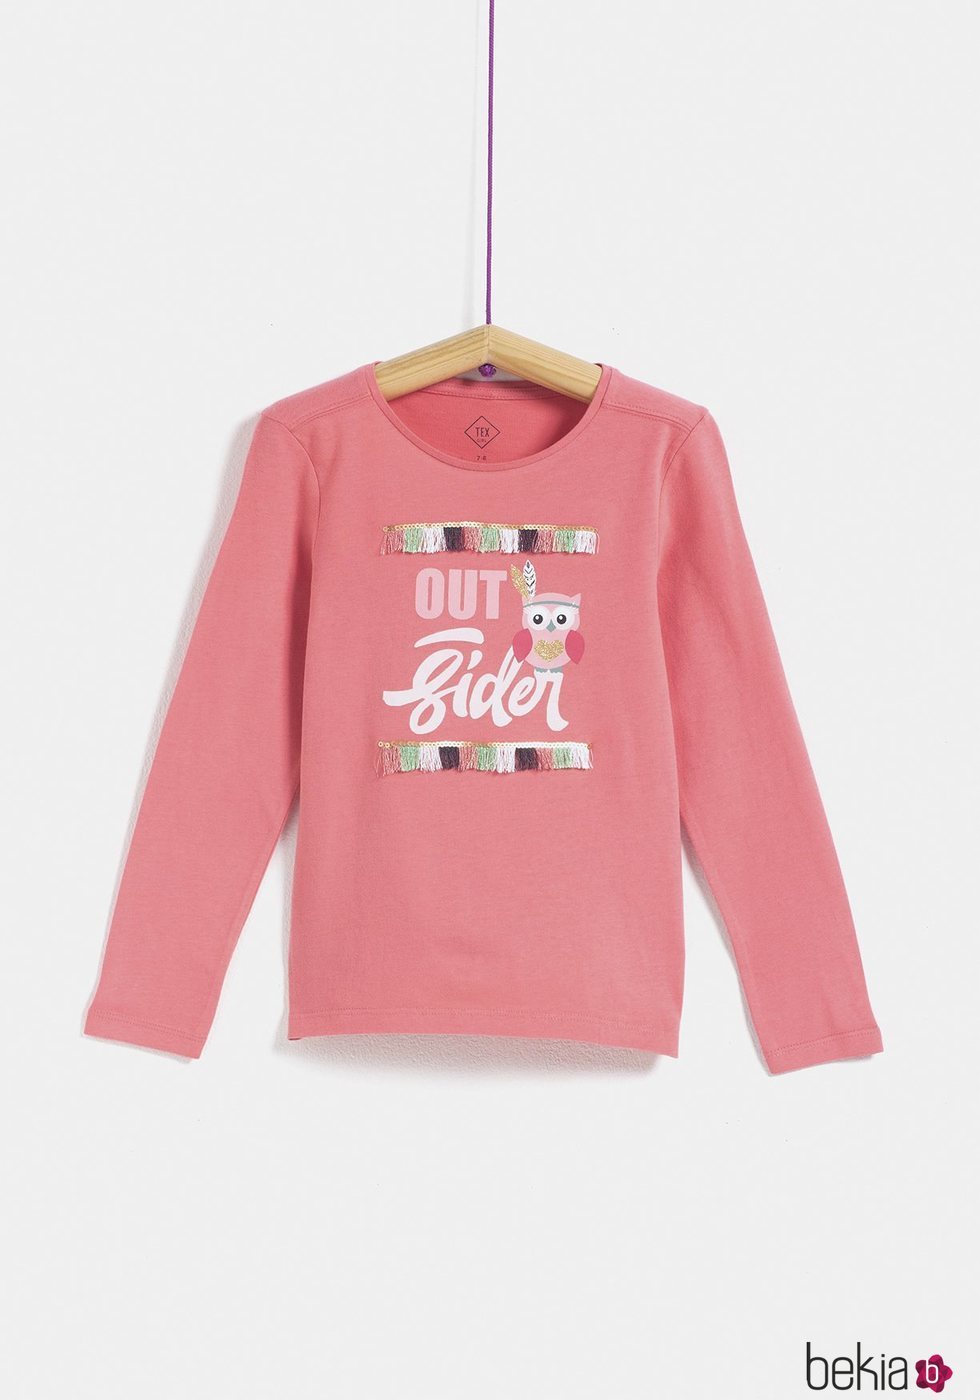 Camiseta rosa para niña de la colección 'I-O' de Carrefour y TEX para otoño/invierno 2019